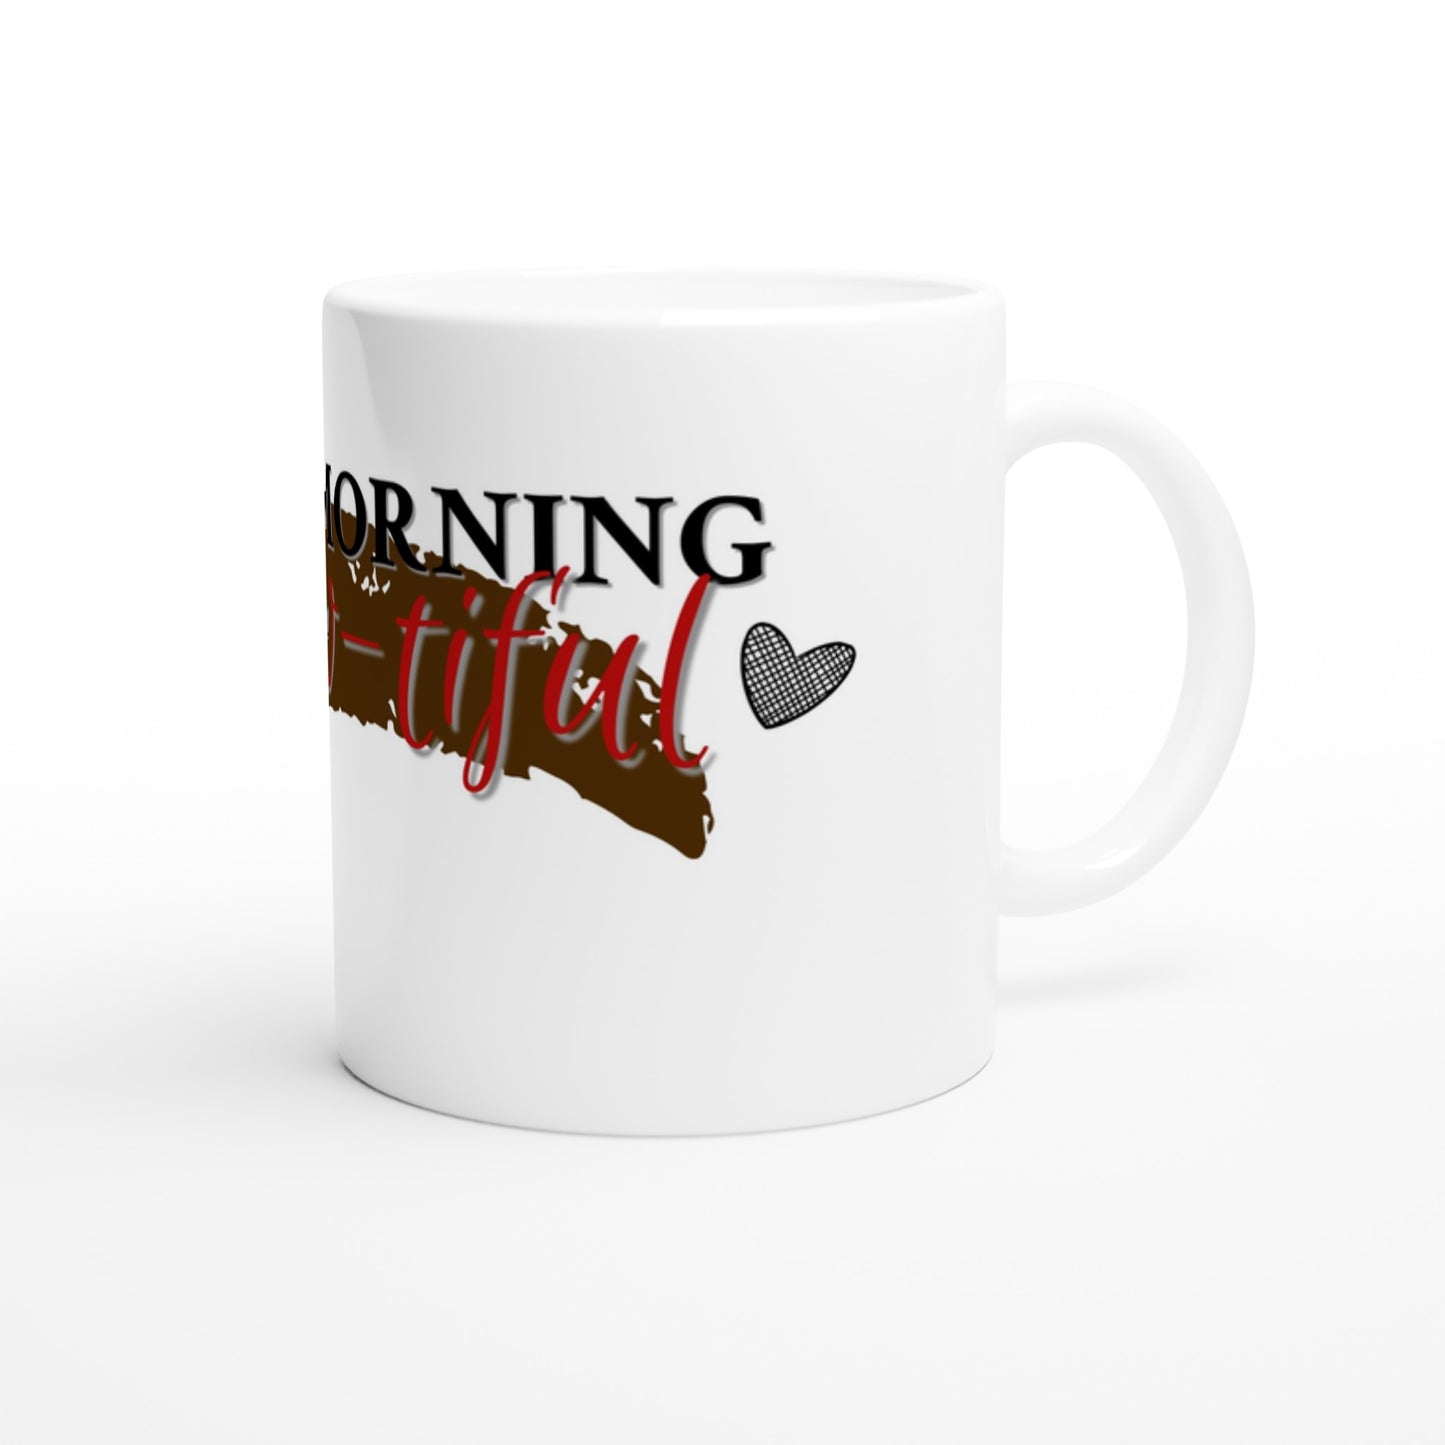 Good Morning Brew-tiful: Coffee Mug